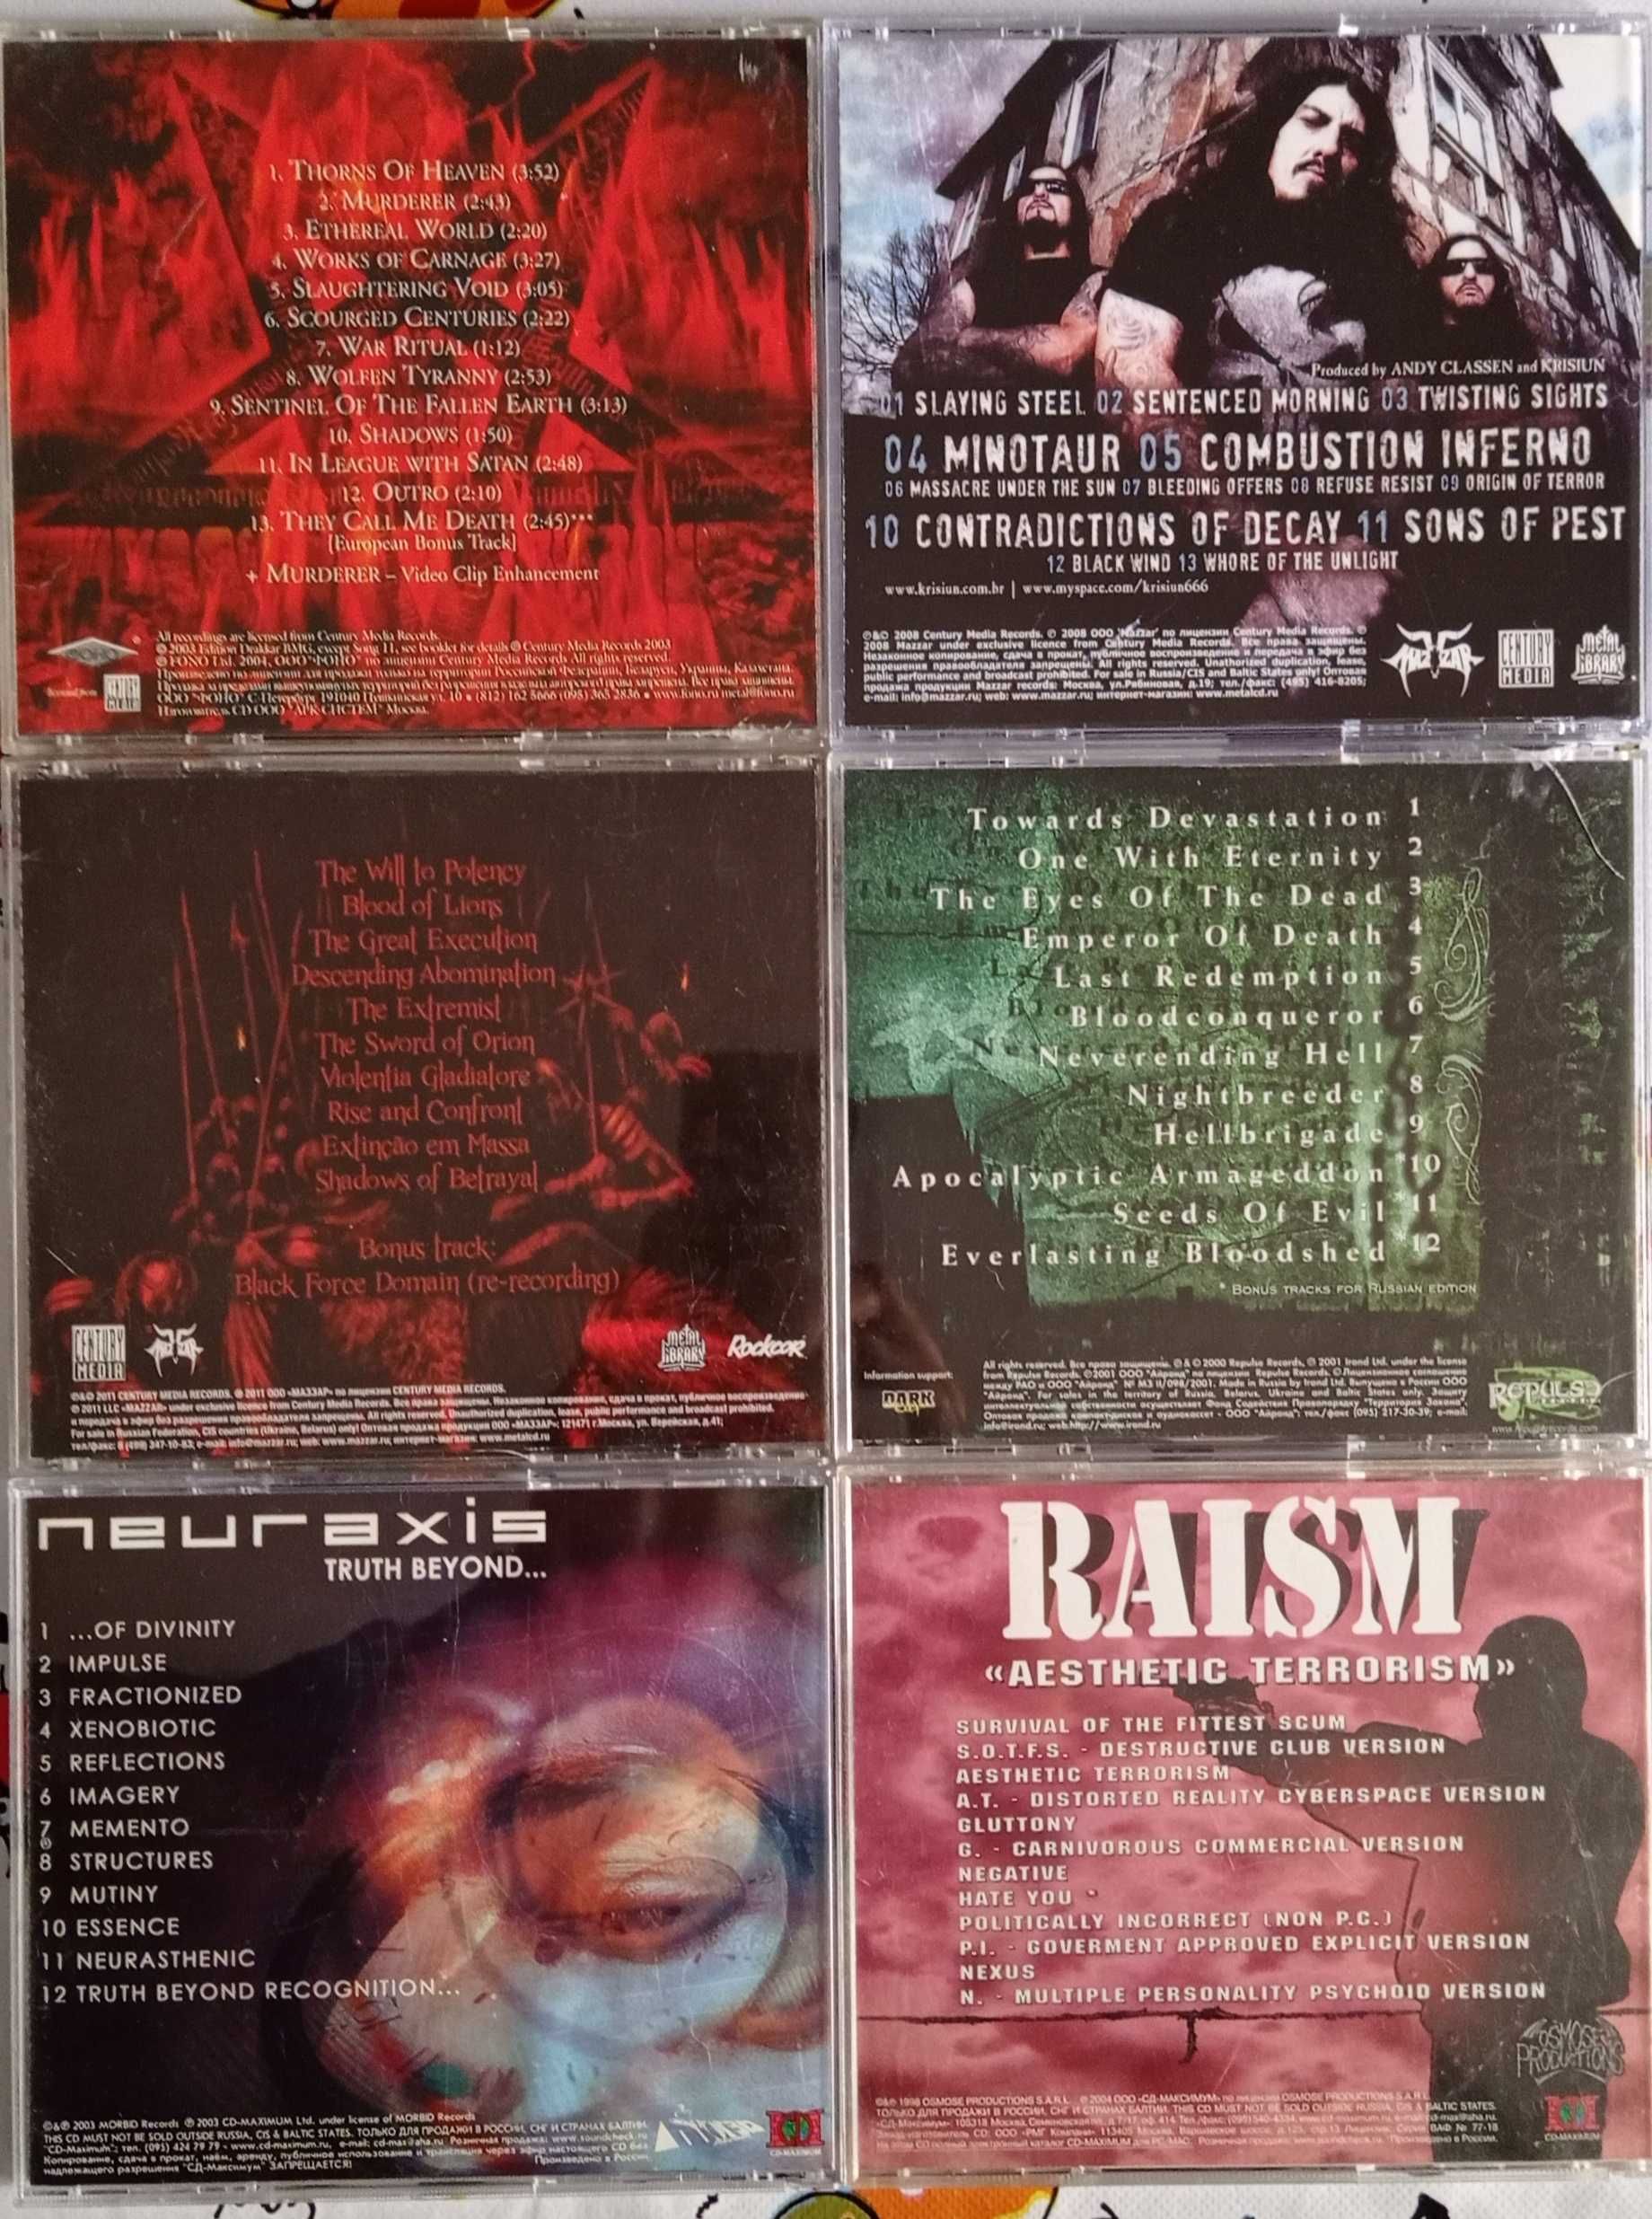 Raism - Aesthetic Terrorism - CD-Maximum